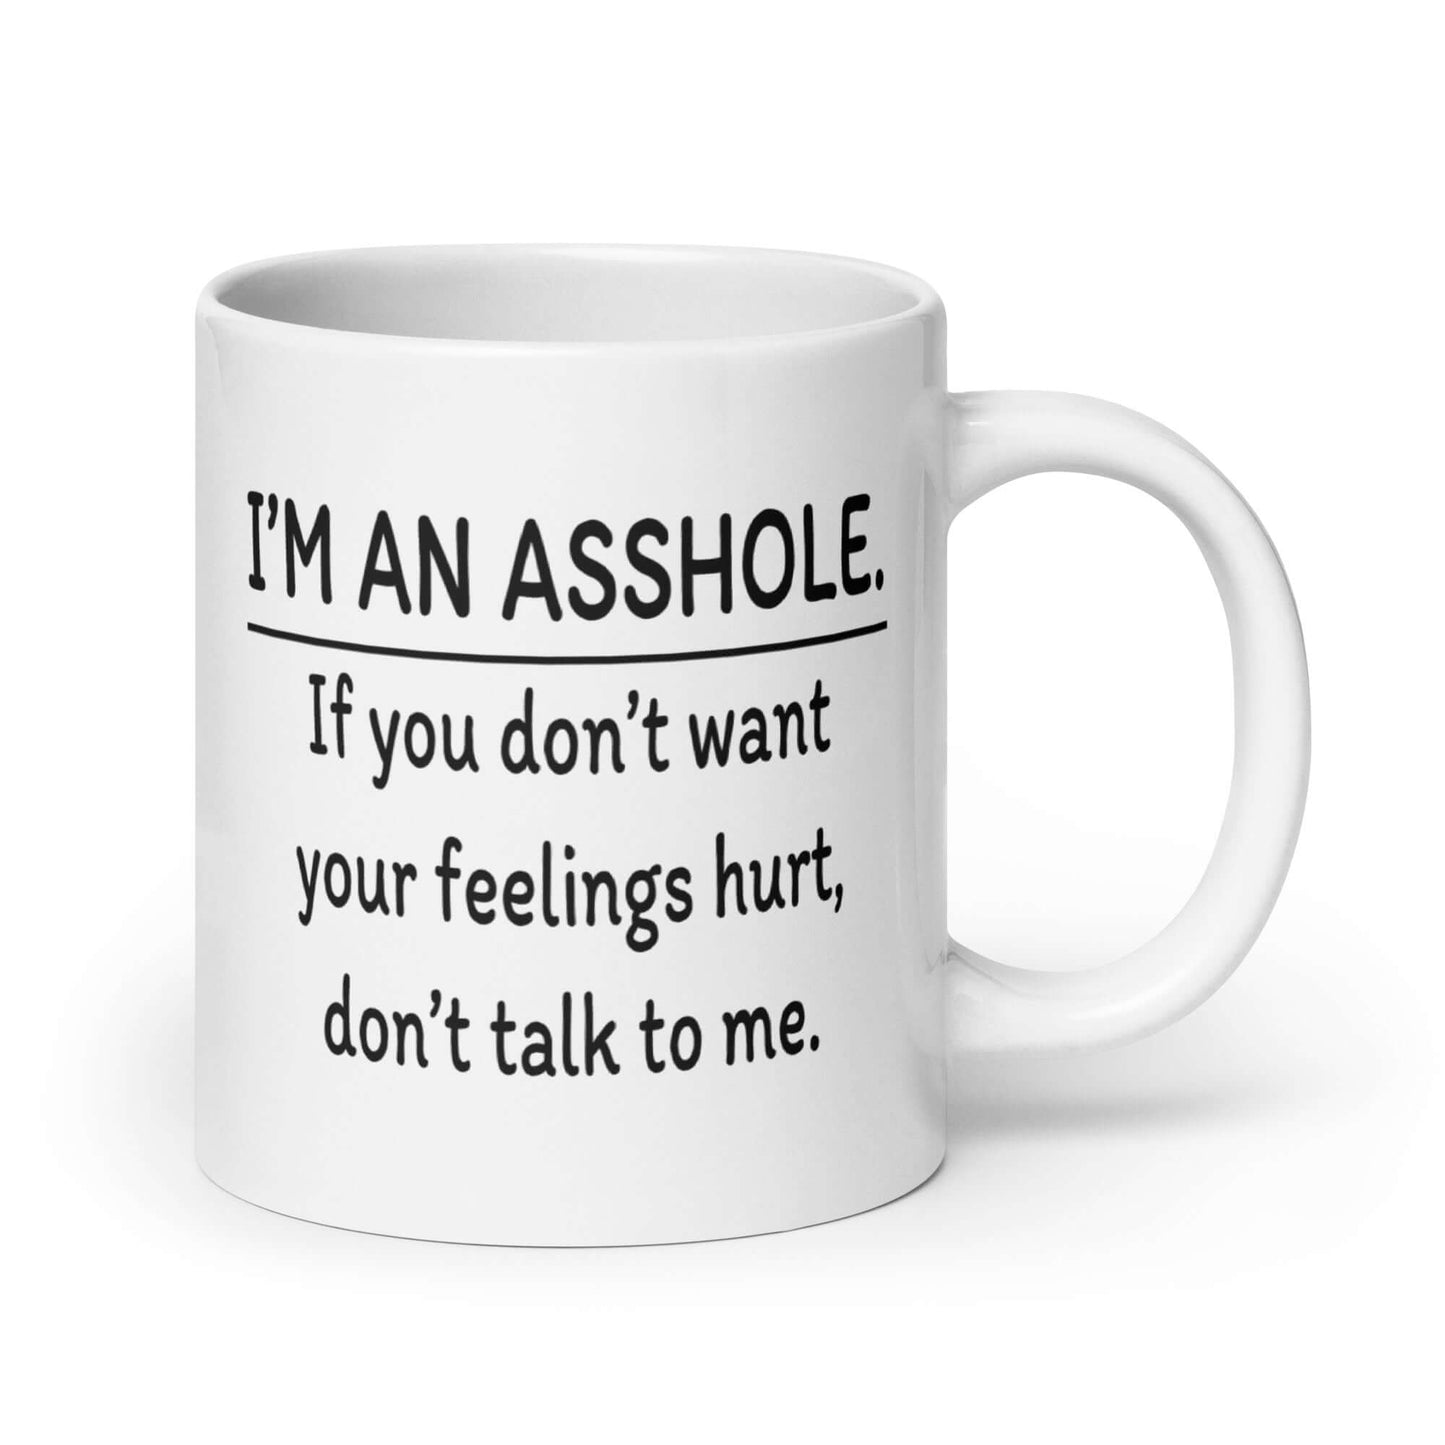 Funny I'm an asshole mug